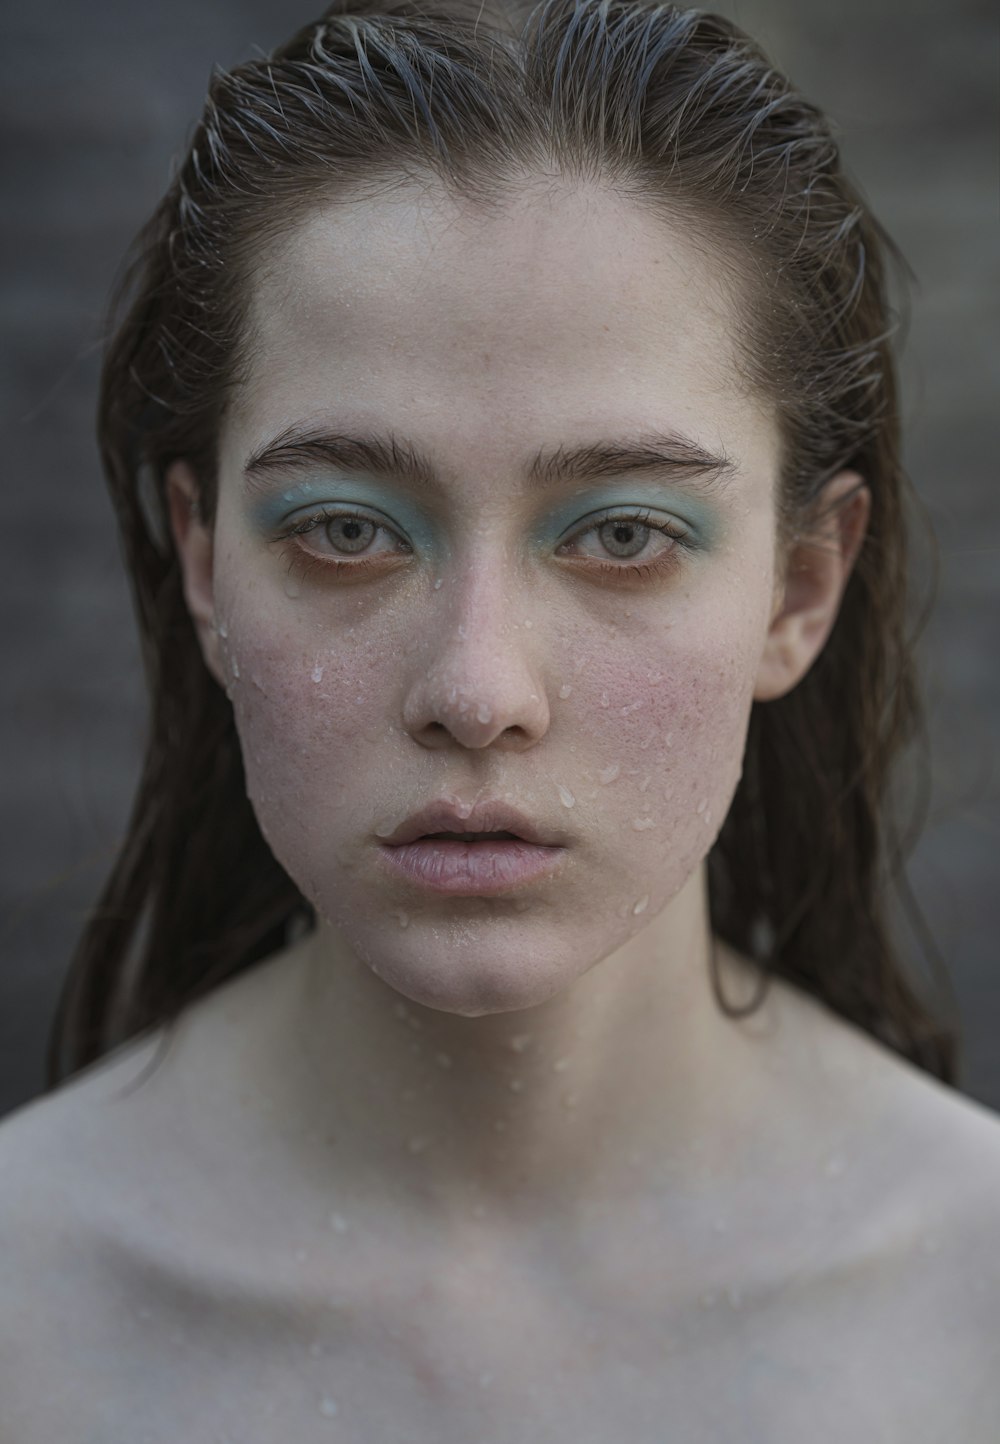 Una donna con gli occhi azzurri e le lentiggini sul viso